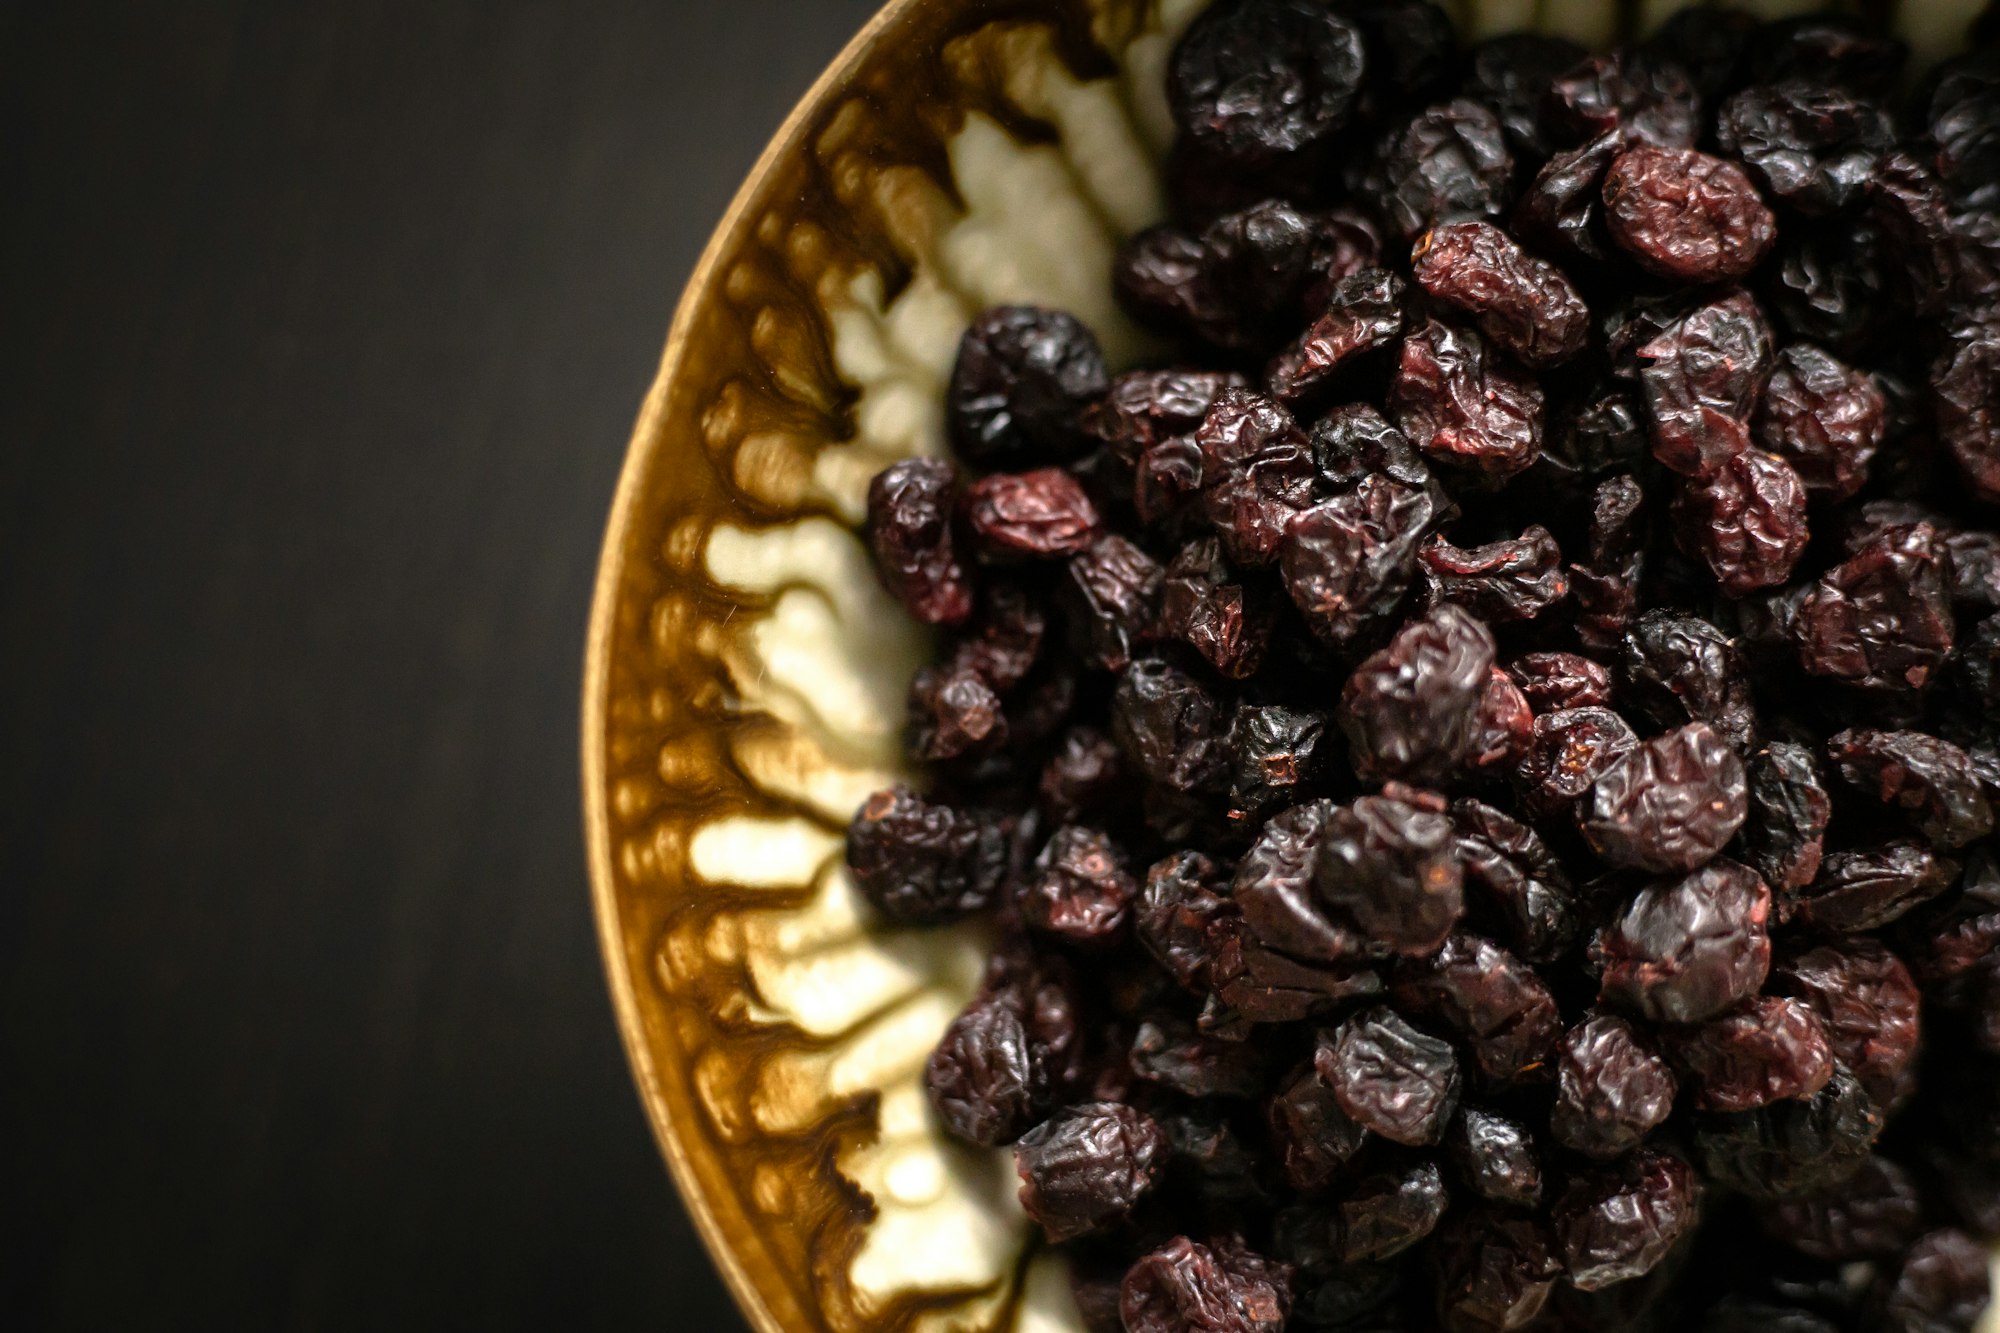 Raisins in a bowl.